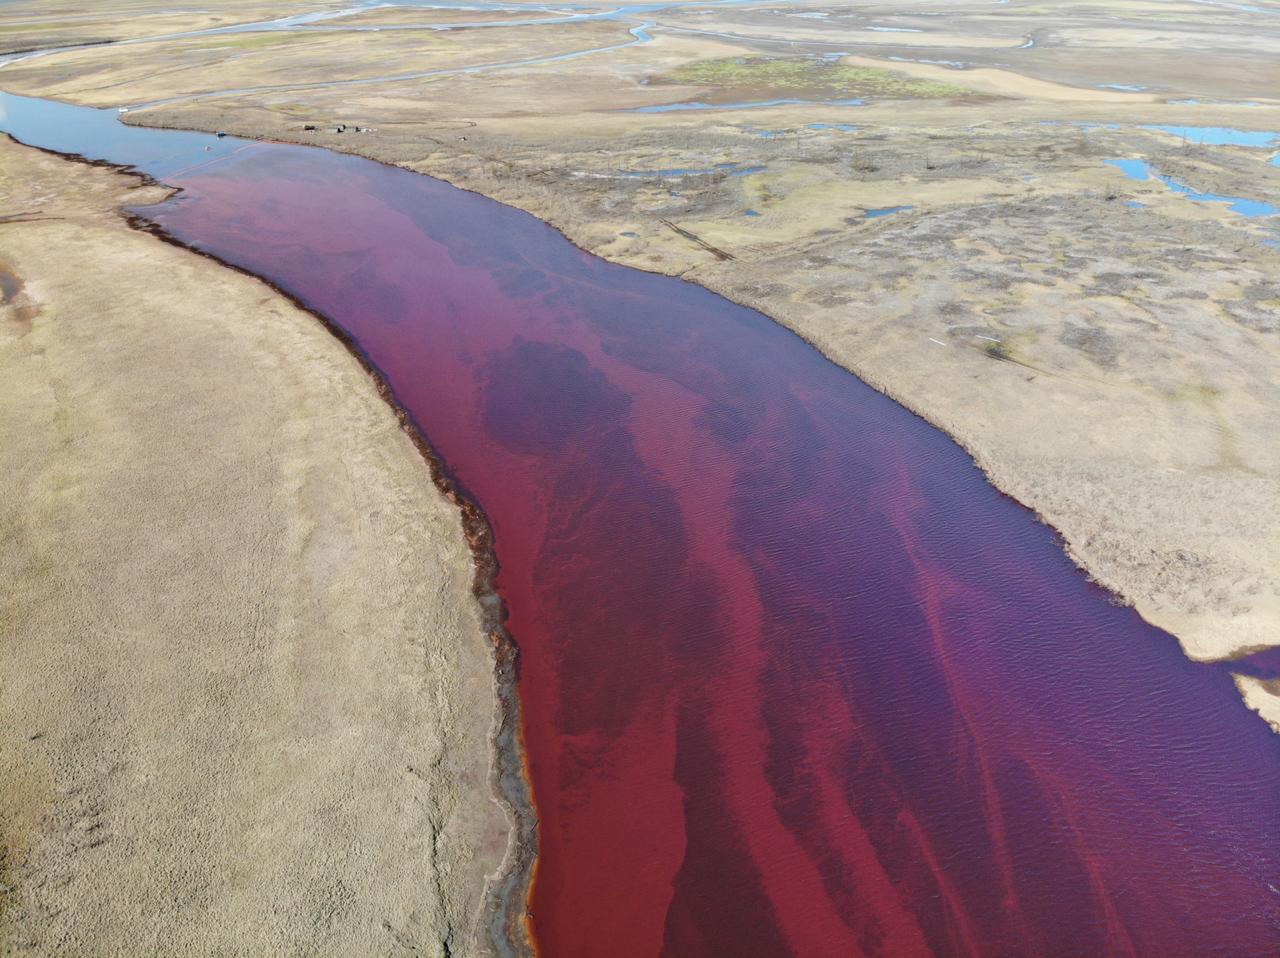 柴油已污染河域超過 20 公里，甚至正往大海流入，恐將危及北極與海洋生態。